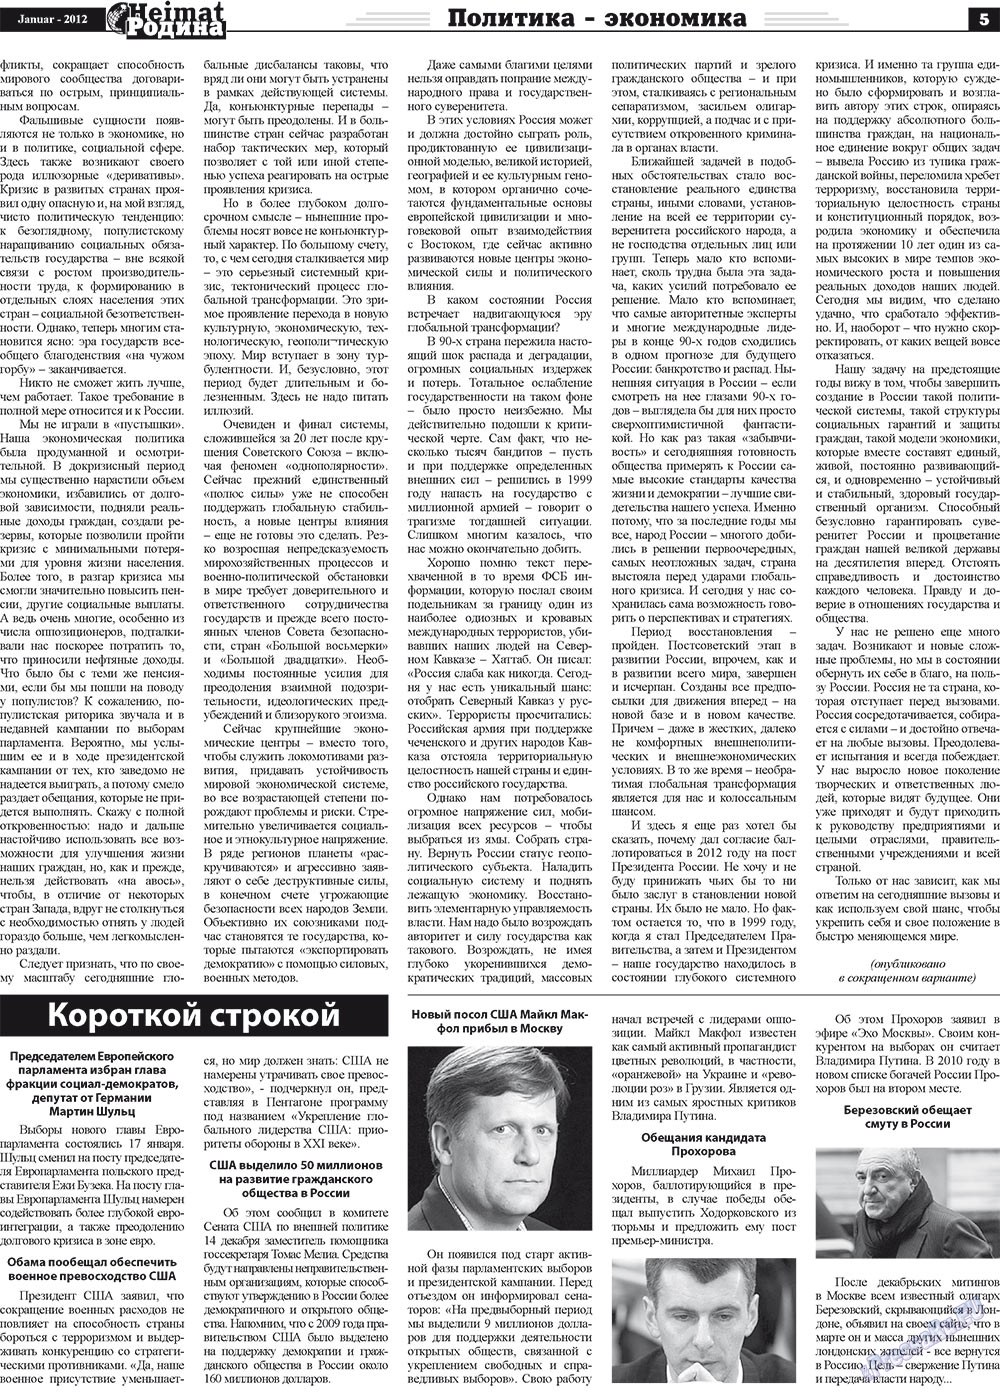 Heimat-Родина (Zeitung). 2012 Jahr, Ausgabe 1, Seite 5